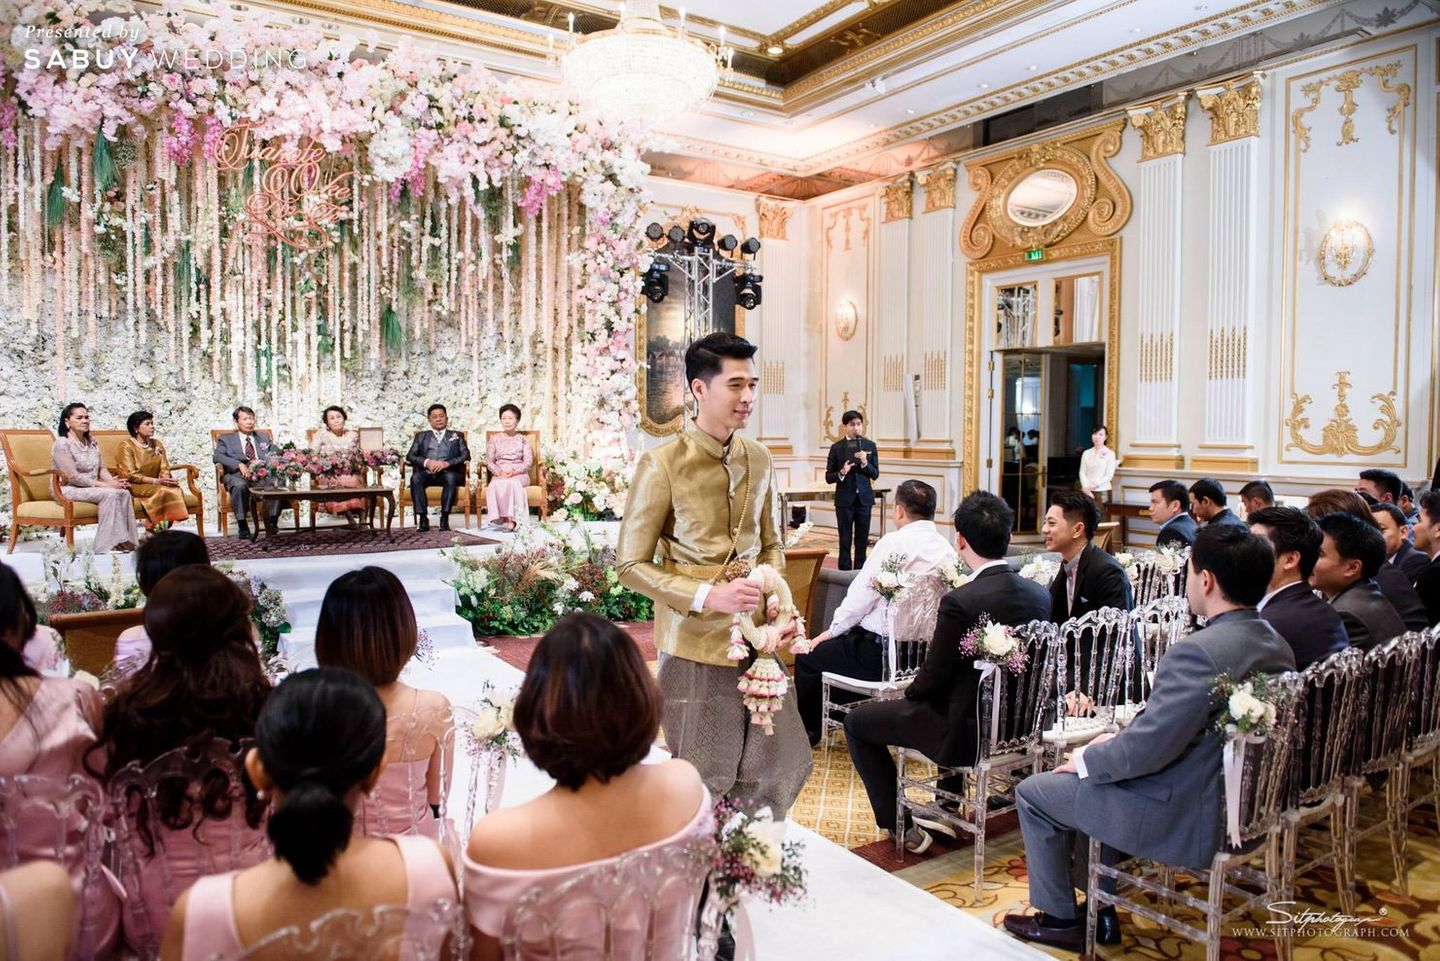 งานแต่งงาน,พิธีแต่งงานแบบไทย,ชุดไทยเจ้าสาว,เจ้าสาวเจ้าบ่าว,สถานที่แต่งงาน,โรงแรม,ตกแต่งงานแต่ง,จัดดอกไม้งานแต่ง รีวิวงานแต่งสุดอบอุ่นแห่งปี ‘We are Family’ งานนี้ห้อมล้อมด้วยรัก @Mandarin Oriental